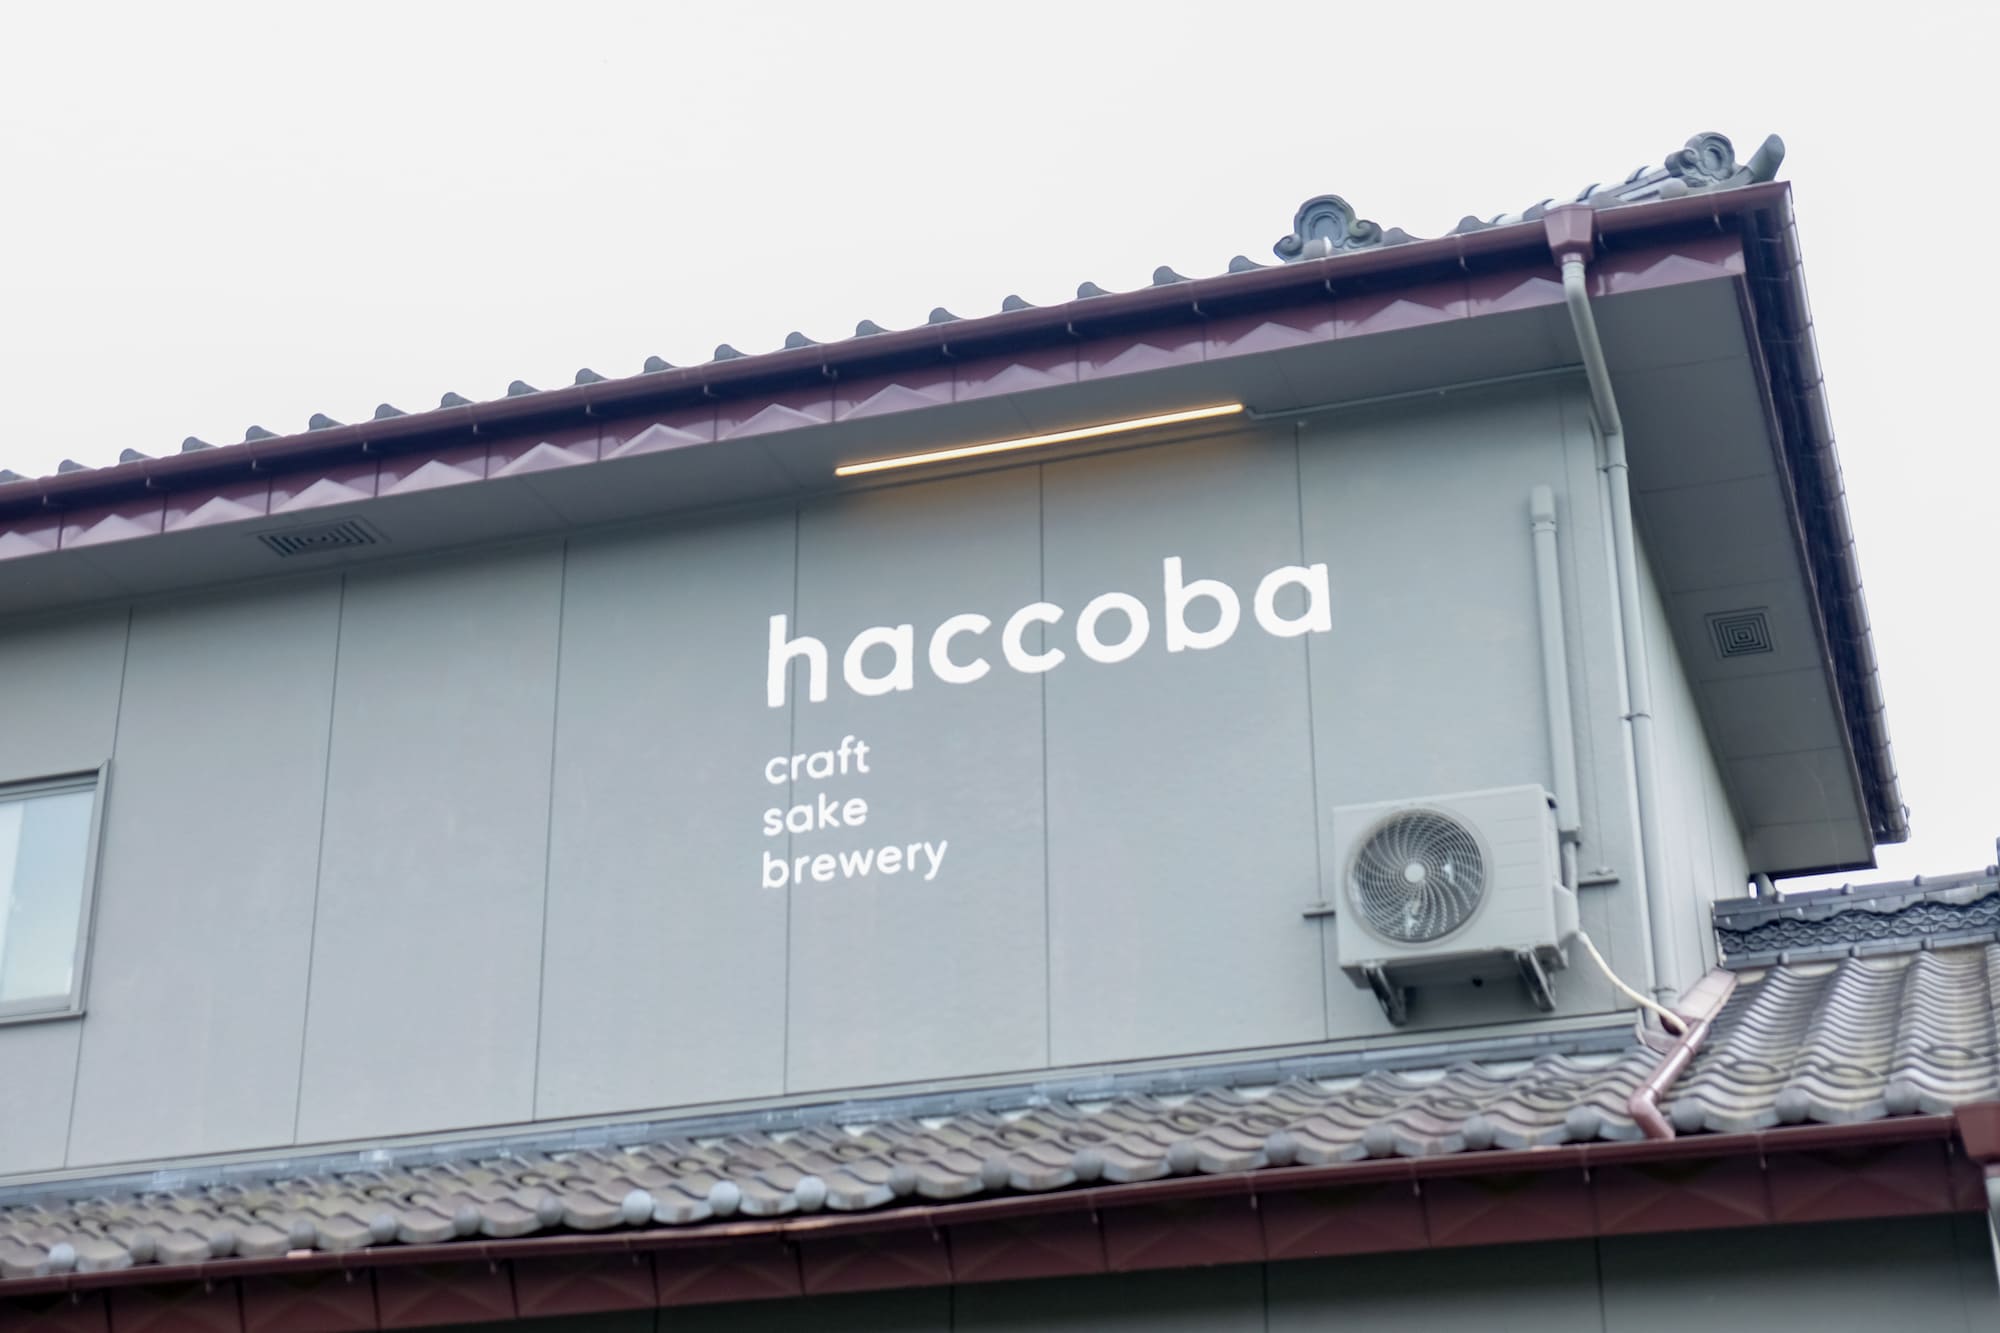 外壁にはhaccobaのロゴが輝いている